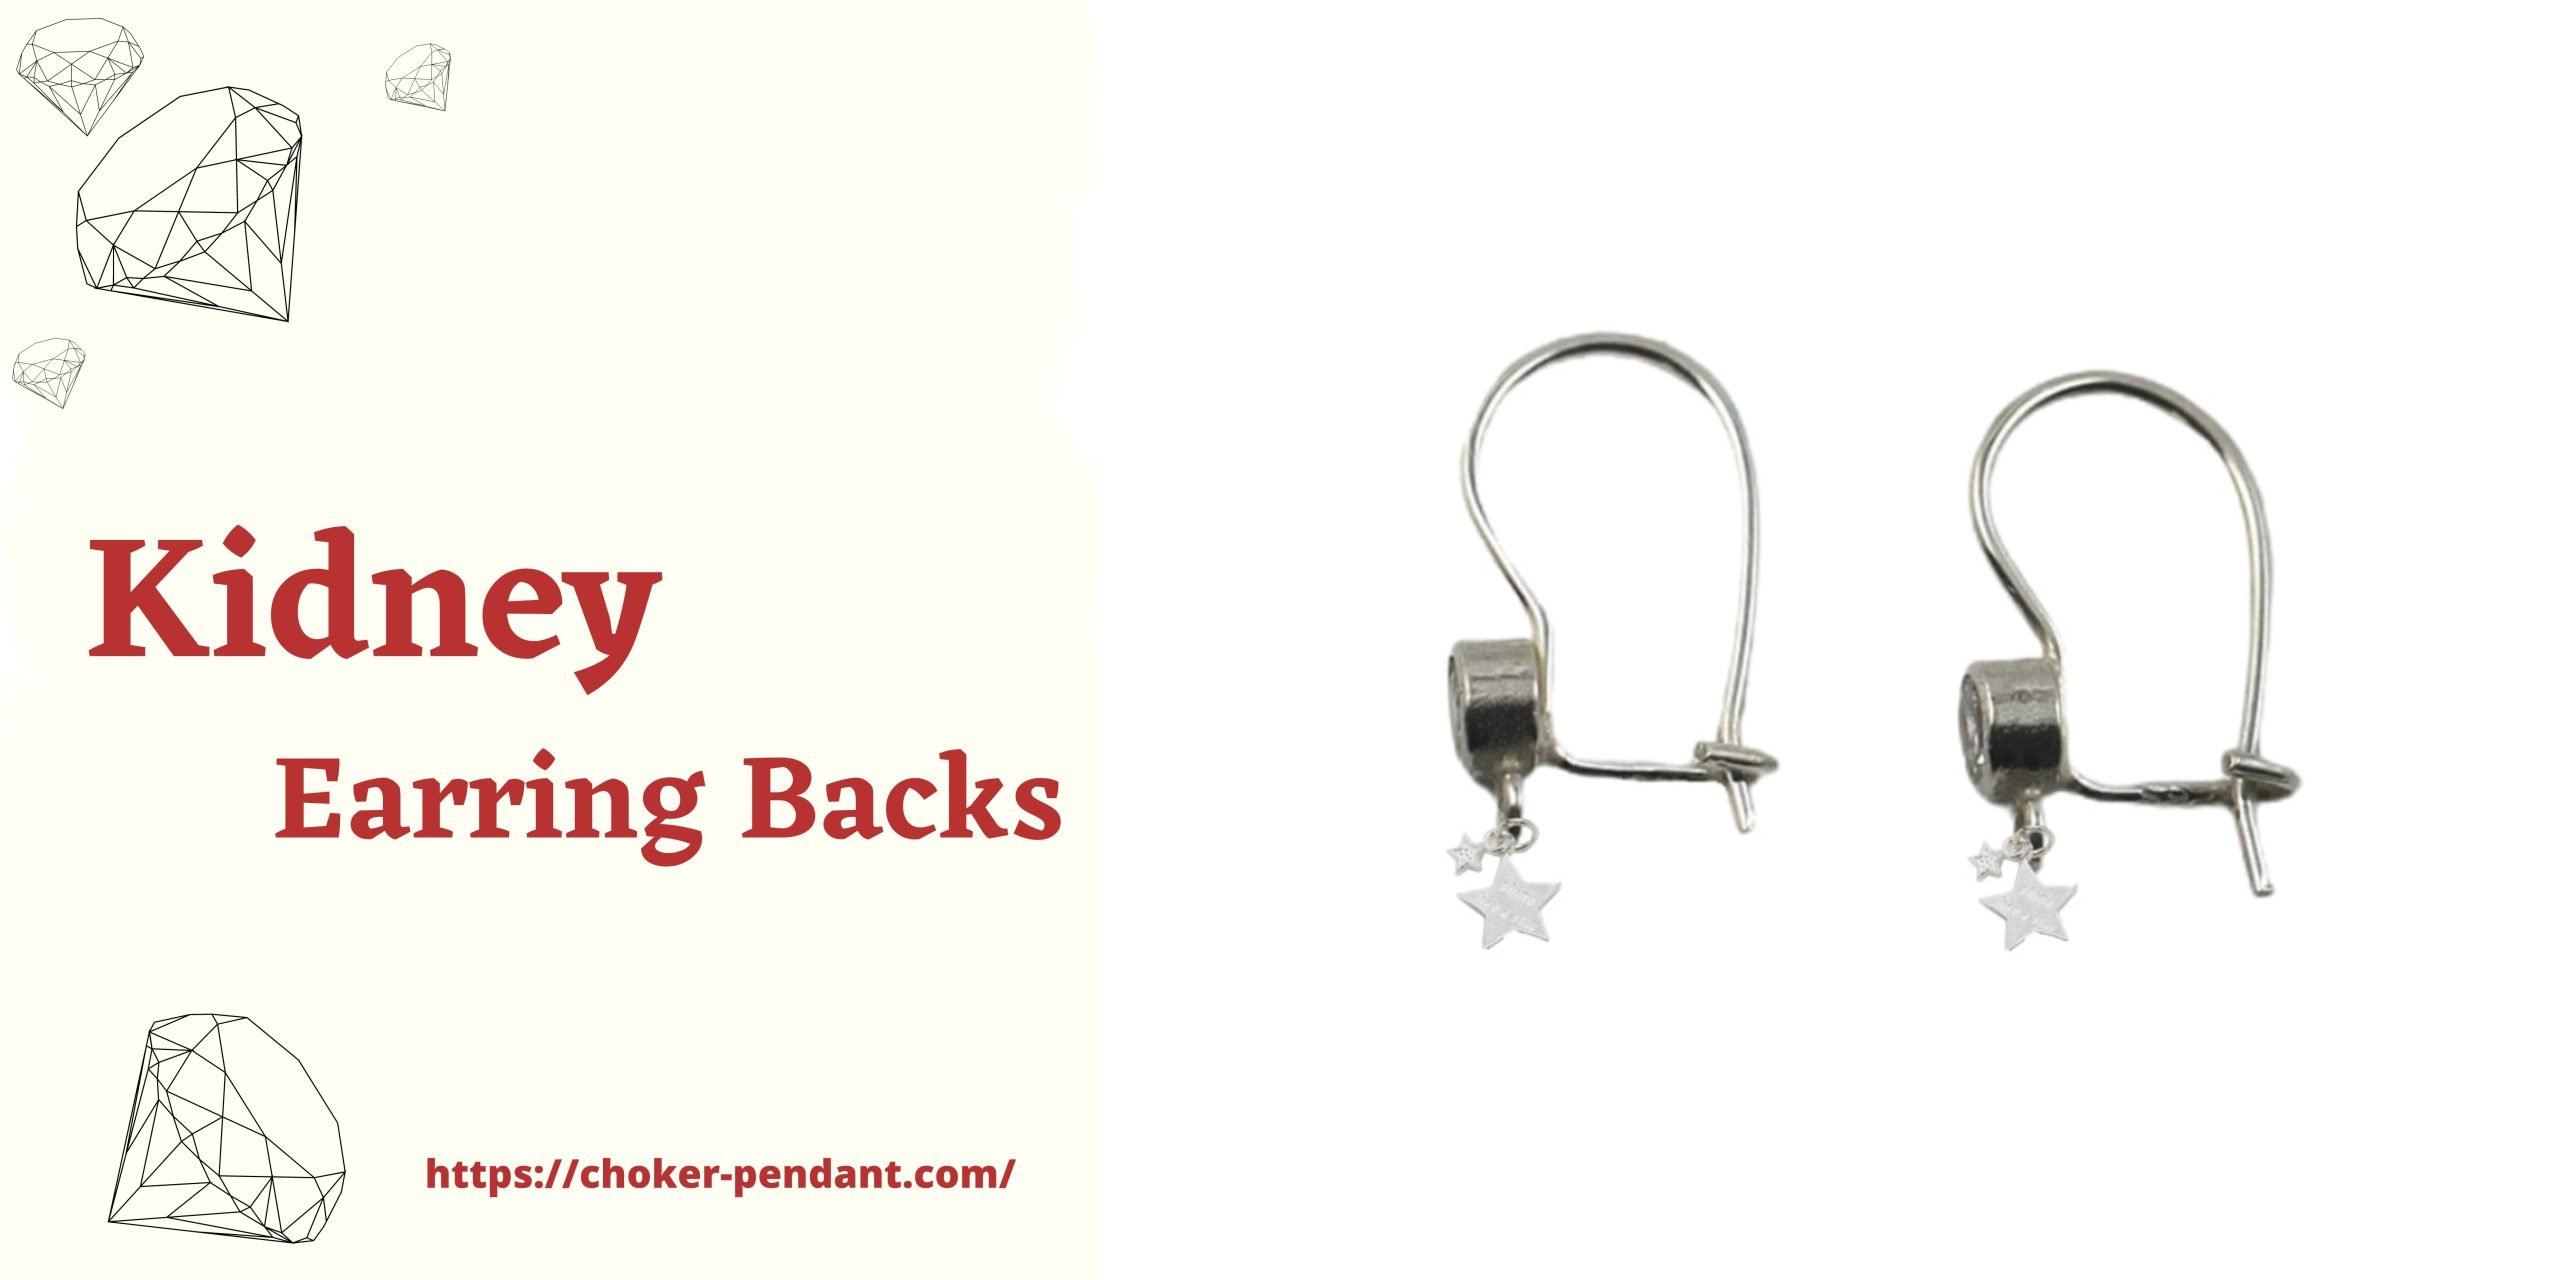 kidney earring backs